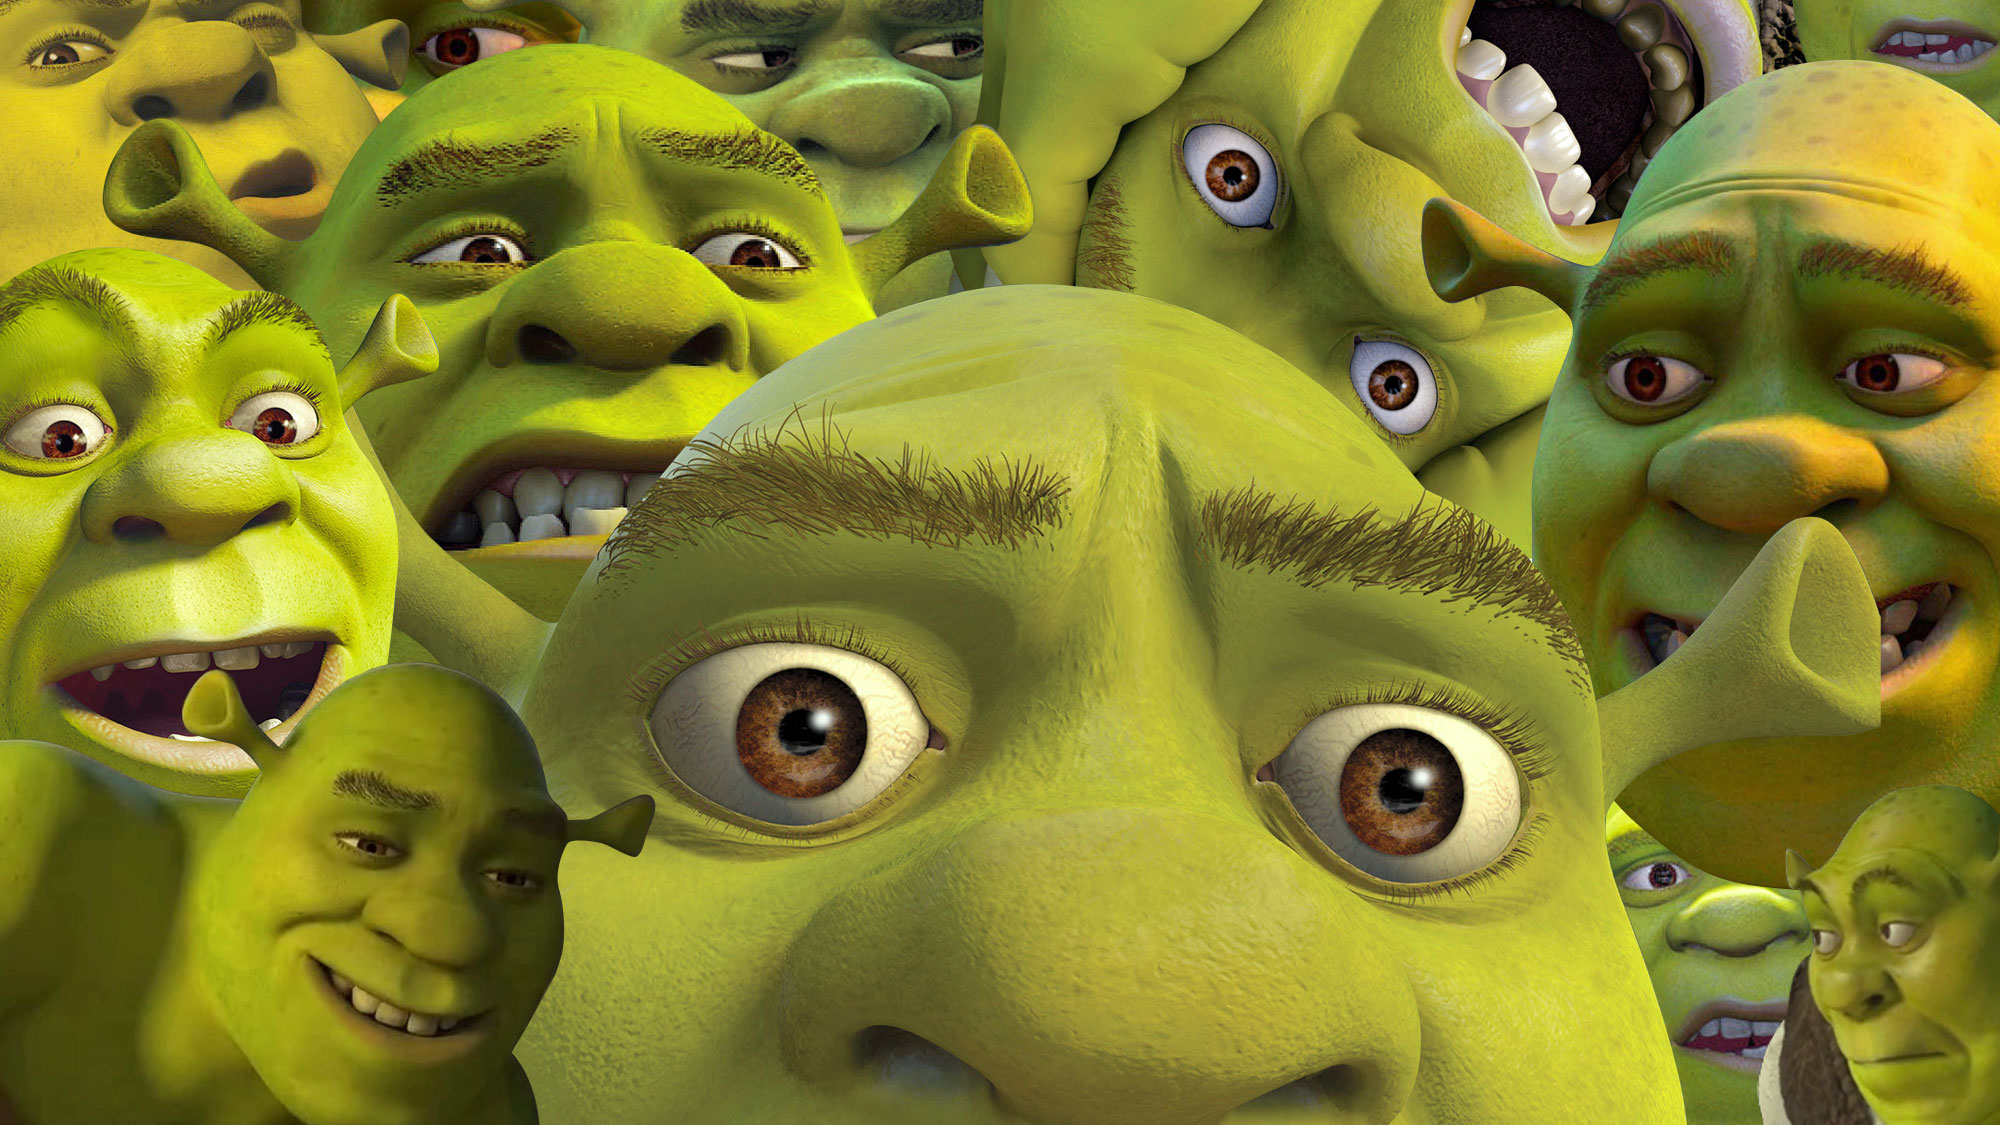 Shrek meme | Poster